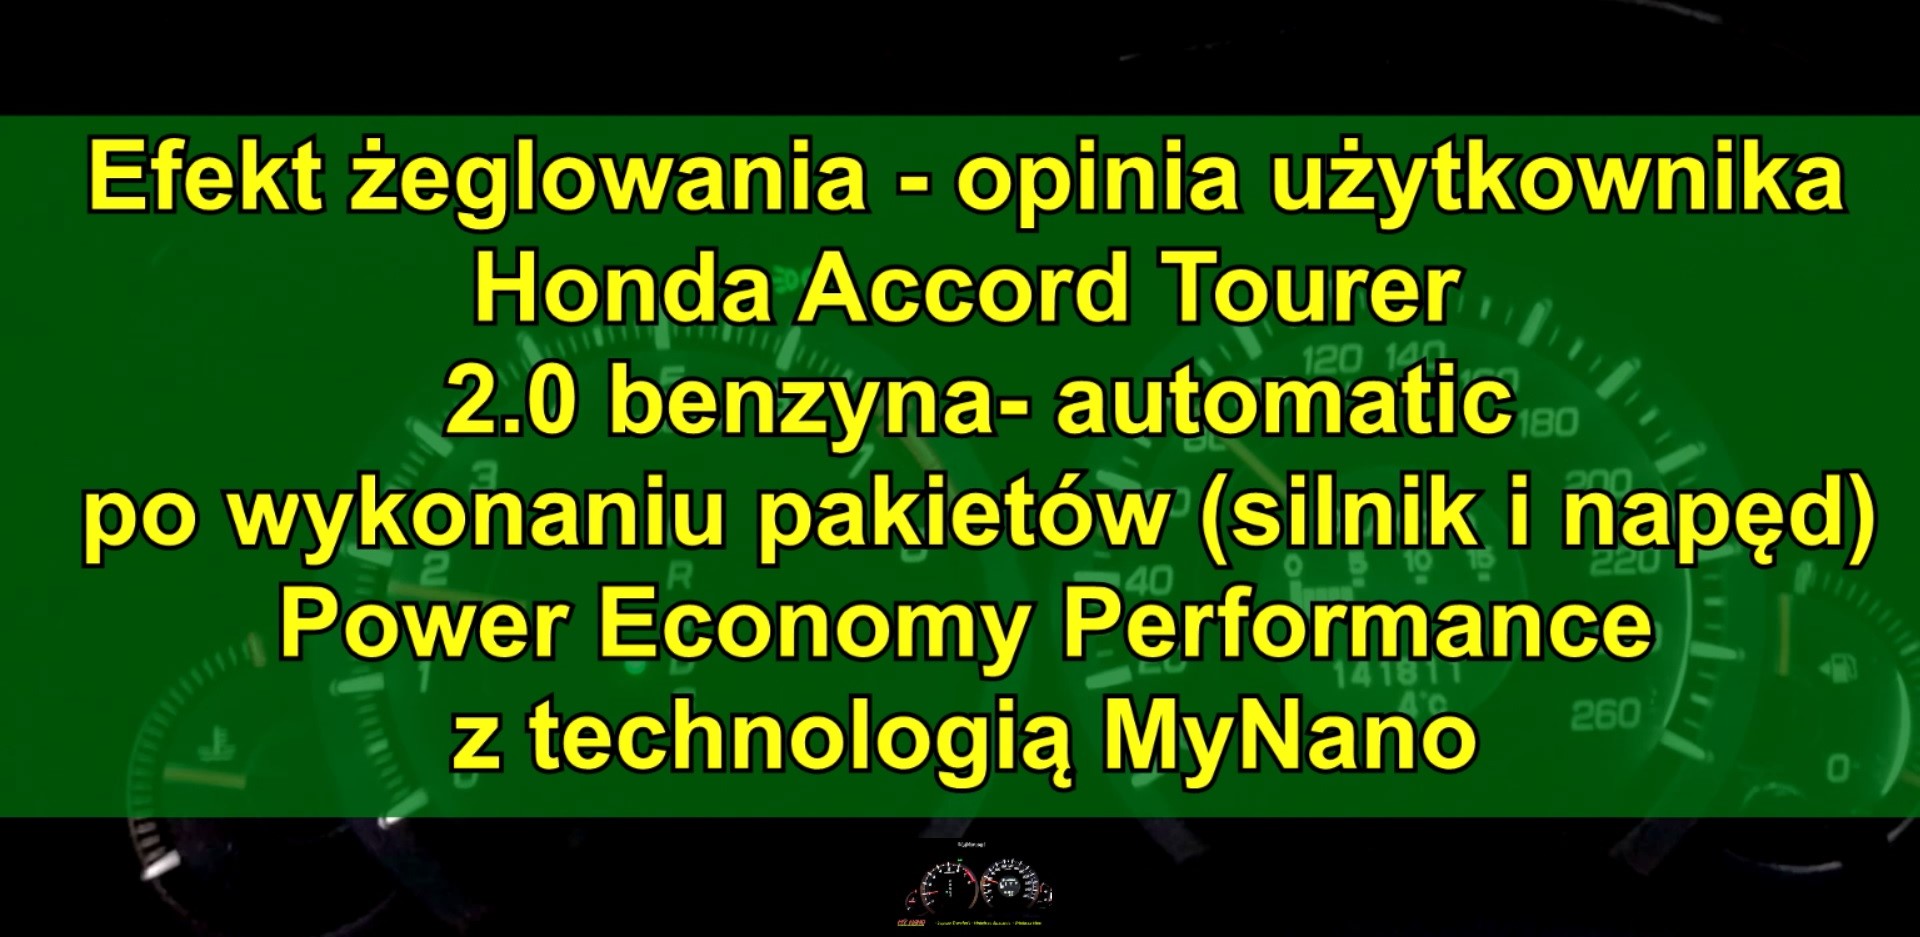 Honda Accord 2.0 benzyna 155 KM po pakiecie Power Economy Performance z MyNano - efekt żeglowania 